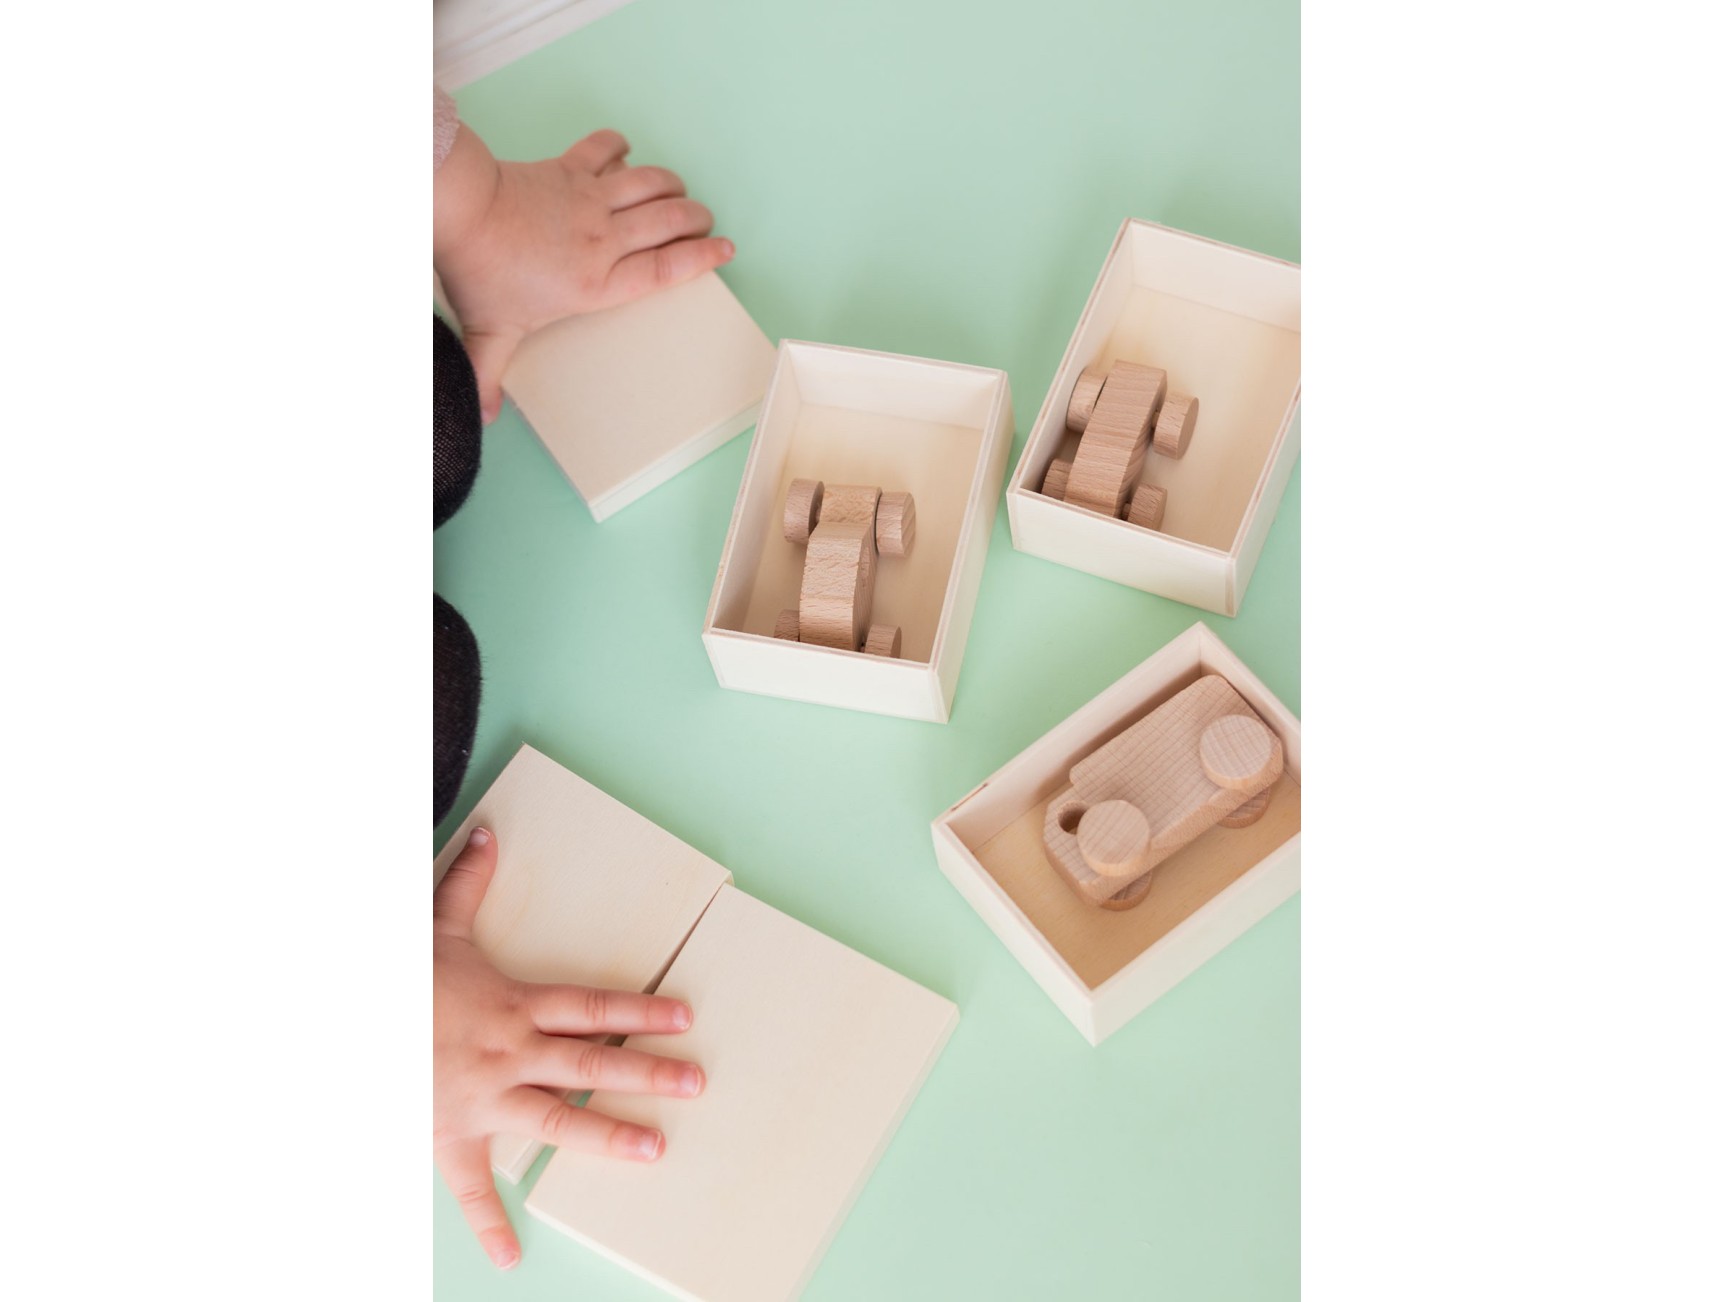 Nuevo: Cubos de madera para personalizar - Blog Mabaonline